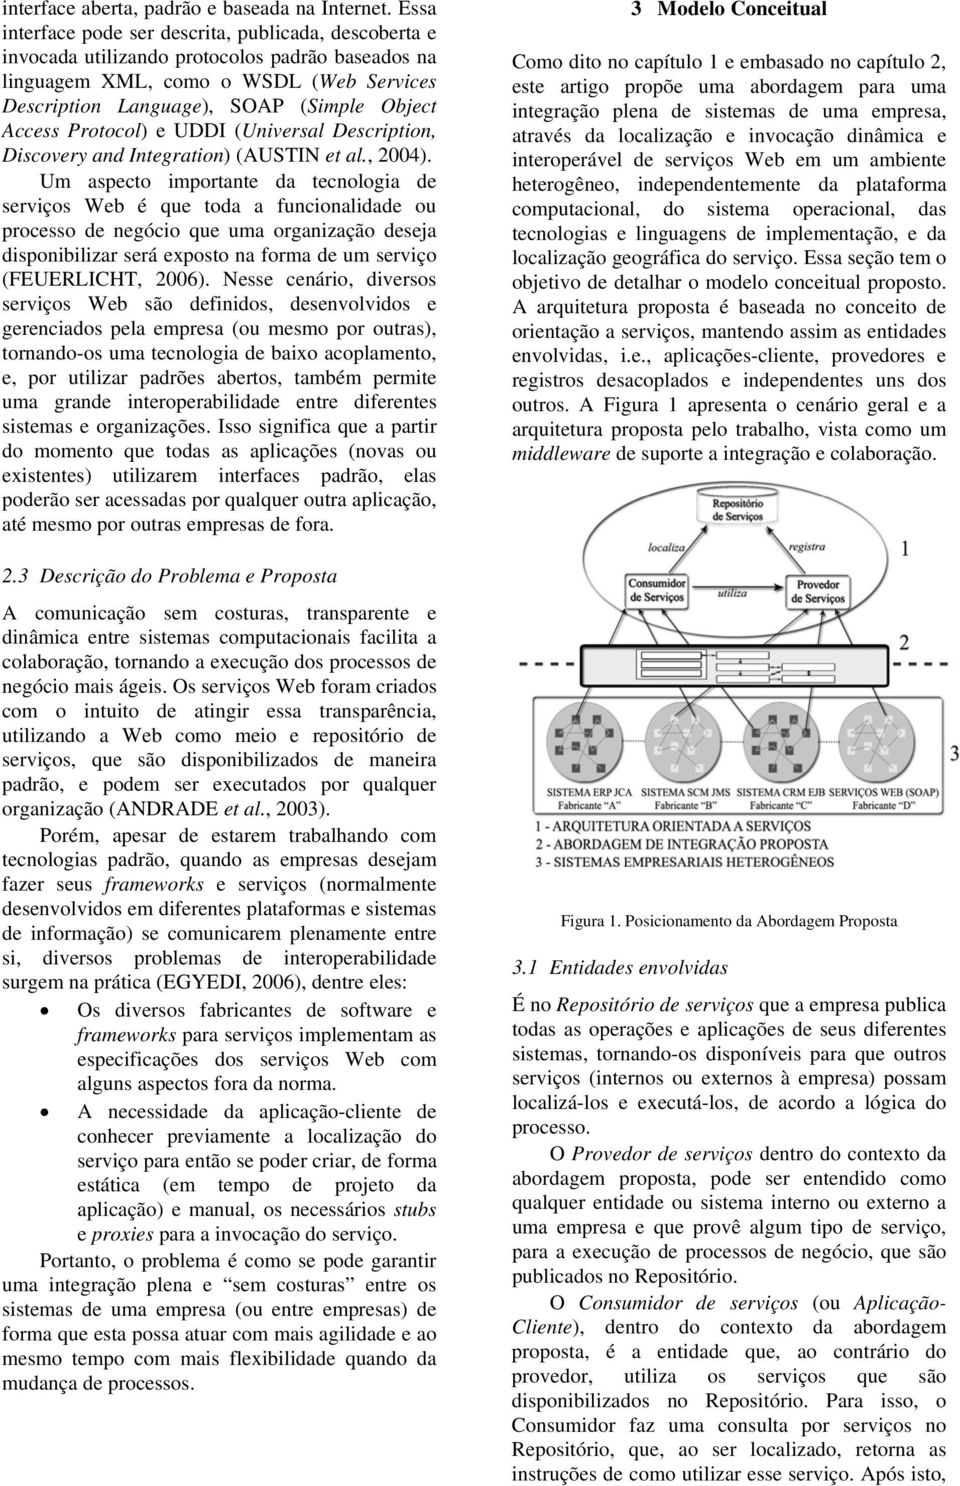 Protocol) e UDDI (Universal Description, Discovery and Integration) (AUSTIN et al., 2004).